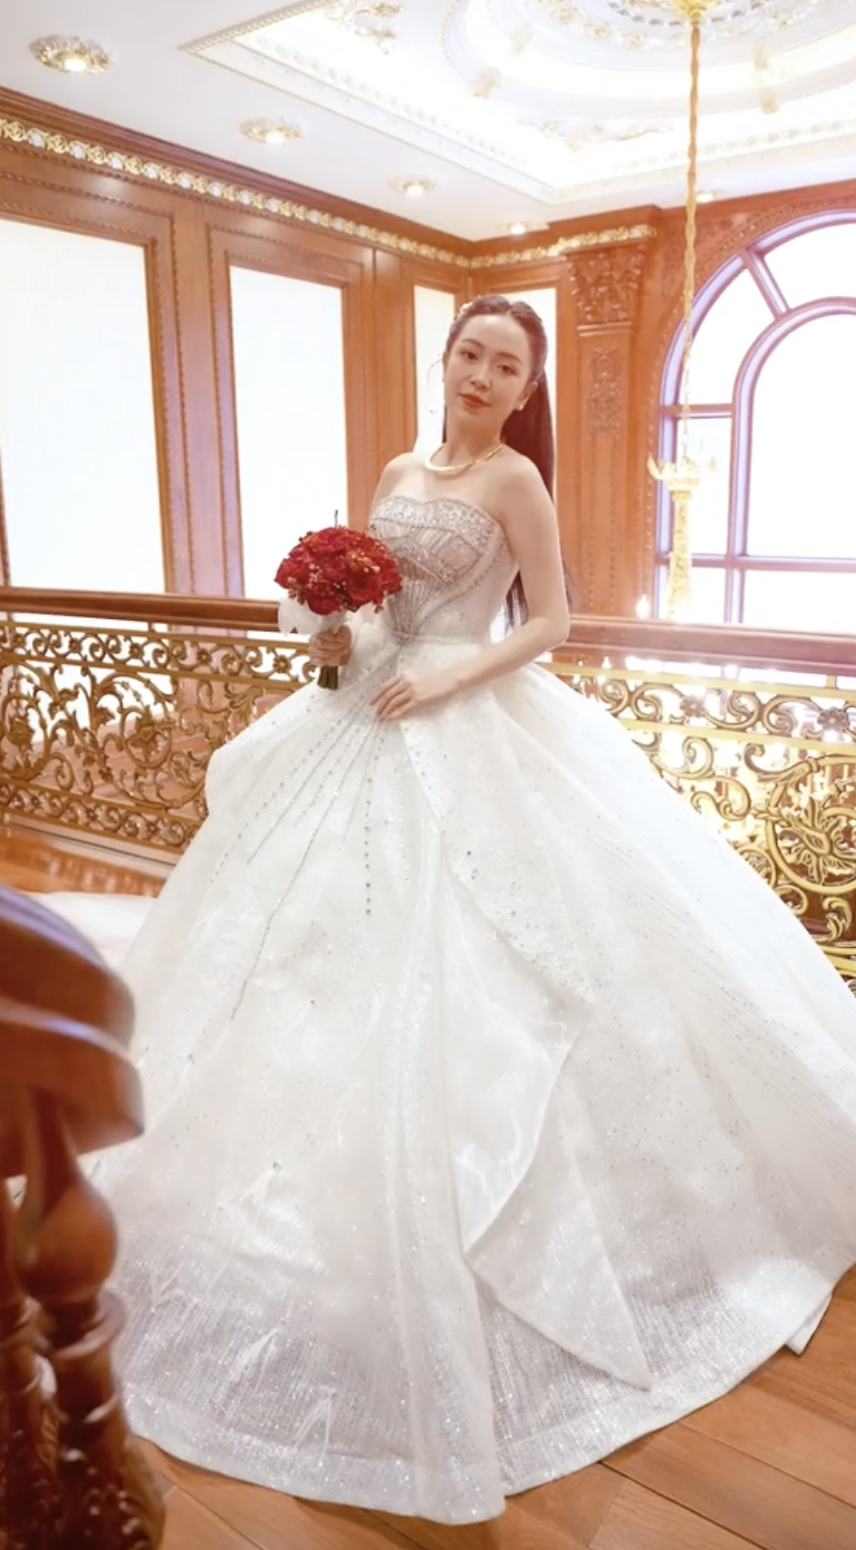 Ngắm cơ ngơi như cung điện của nhà chồng diễn viên Kim Oanh, ai cũng chúc mừng cô số hưởng- Ảnh 4.